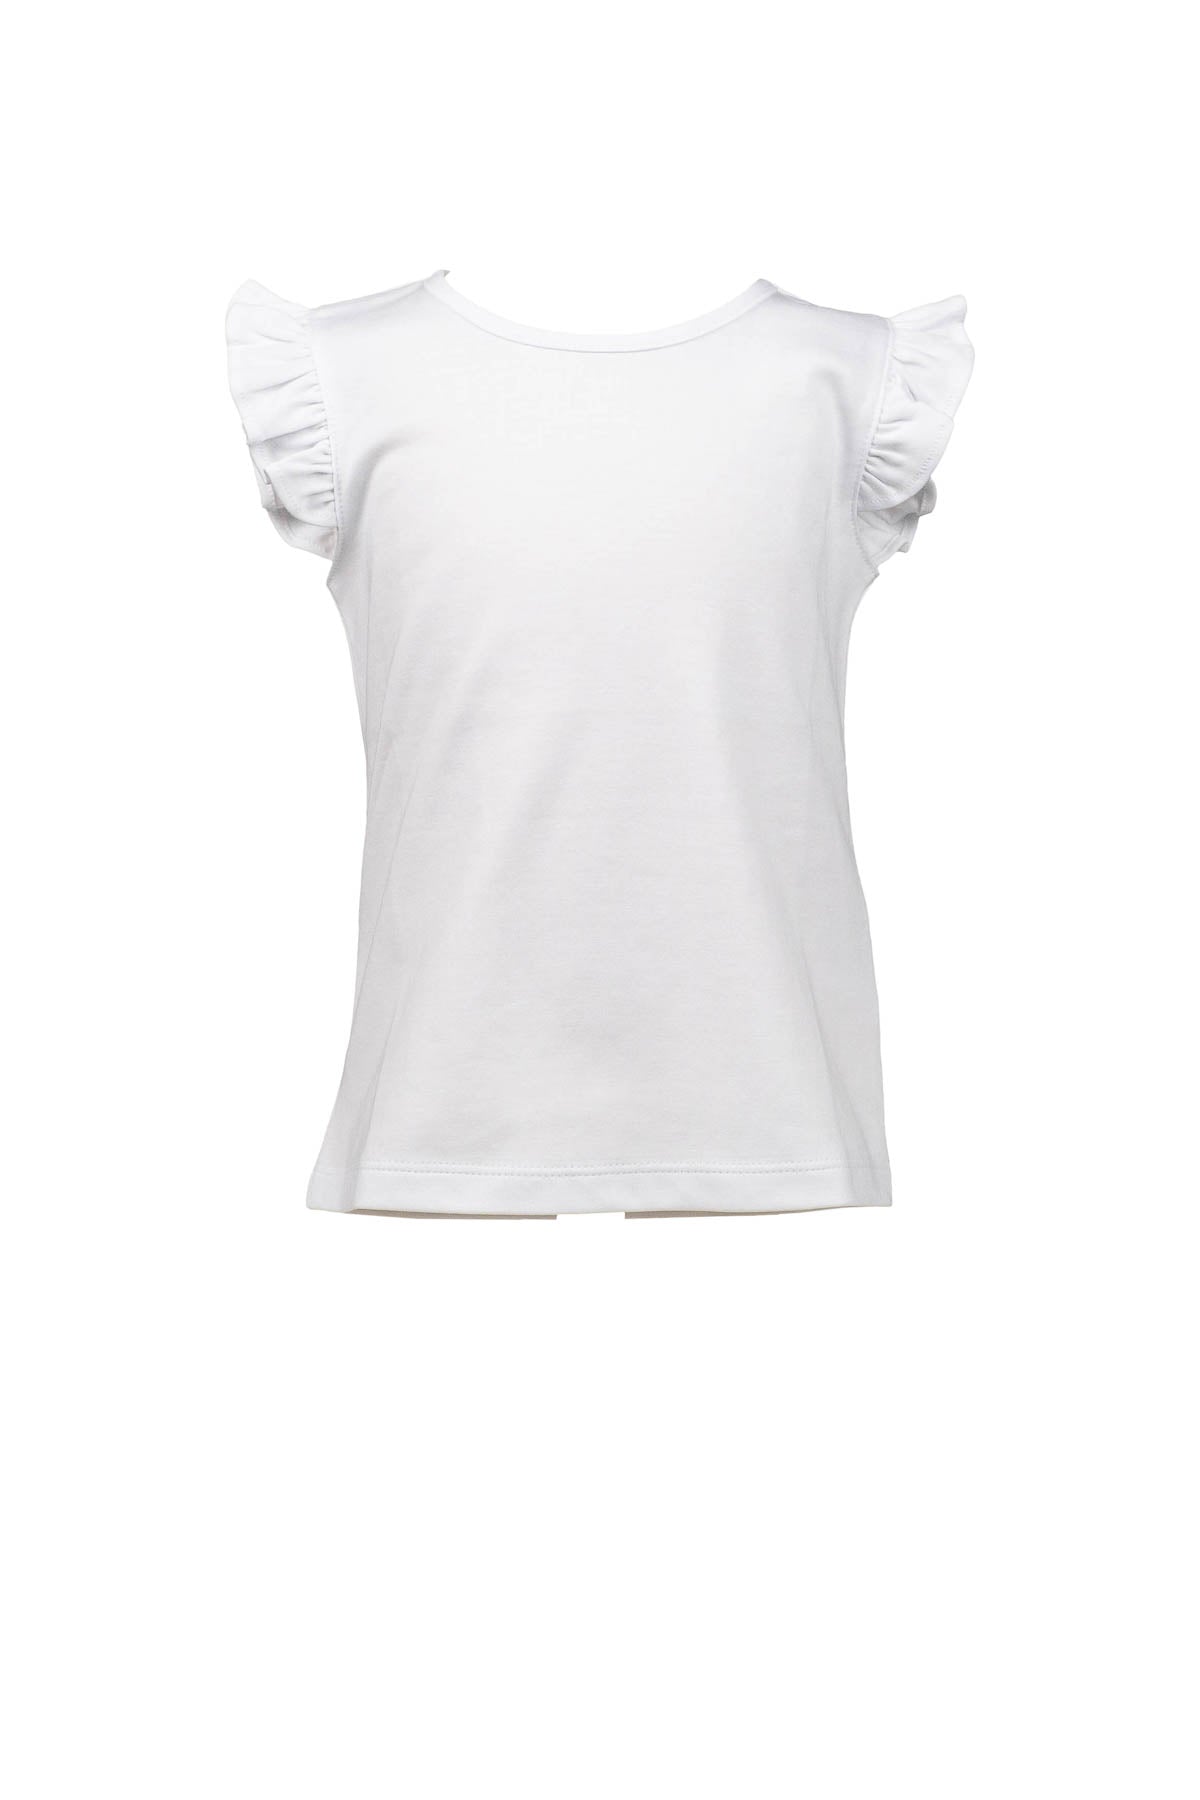 Flutter Sleeve Girl White Shirt (Kid)